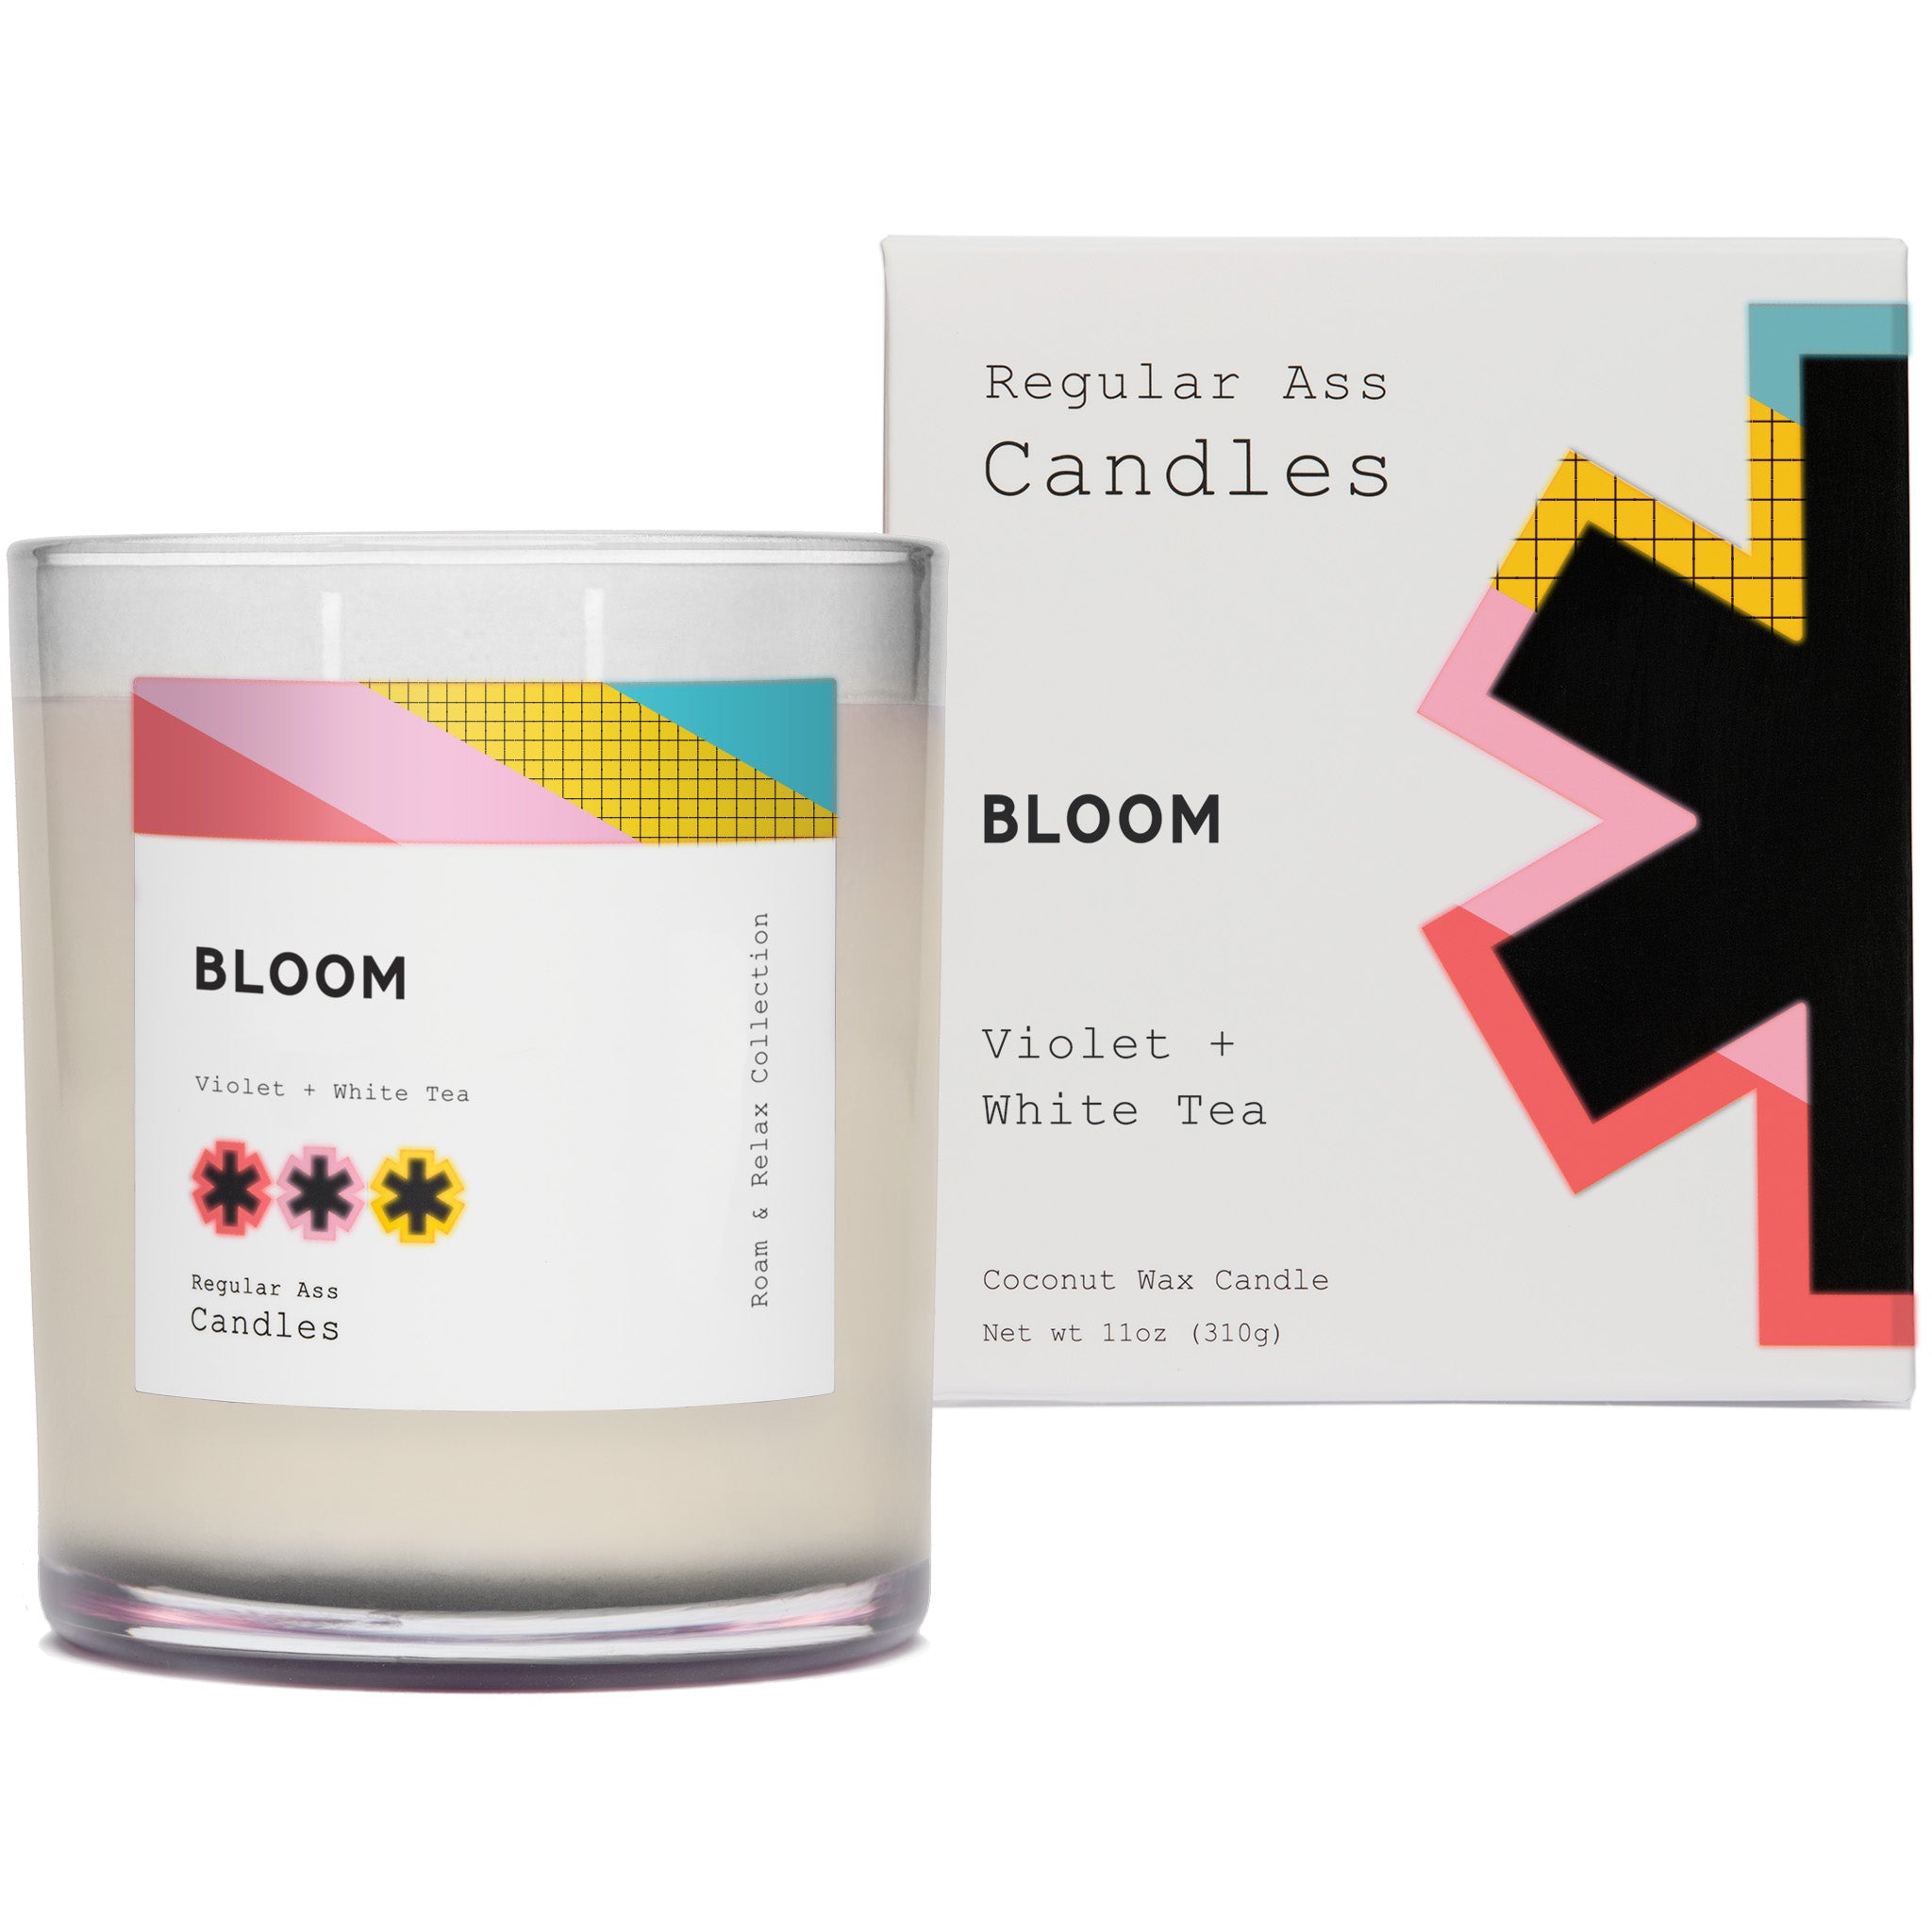 Bloom, Violet + White Tea 11oz Candle